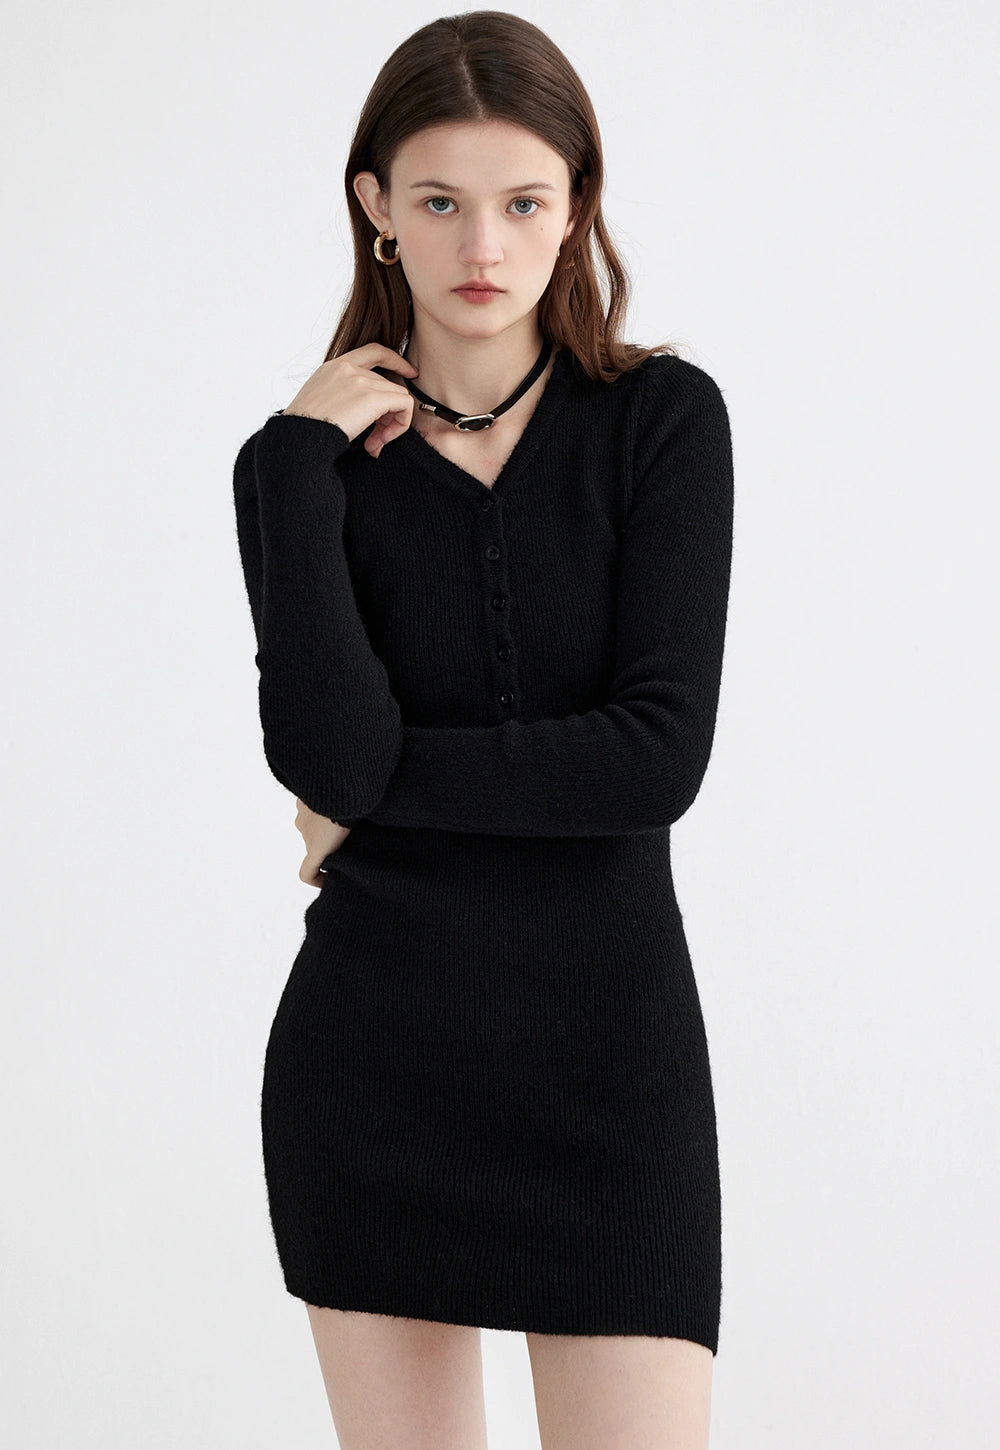 Women's Long-Sleeve Button-Up Knit Dress